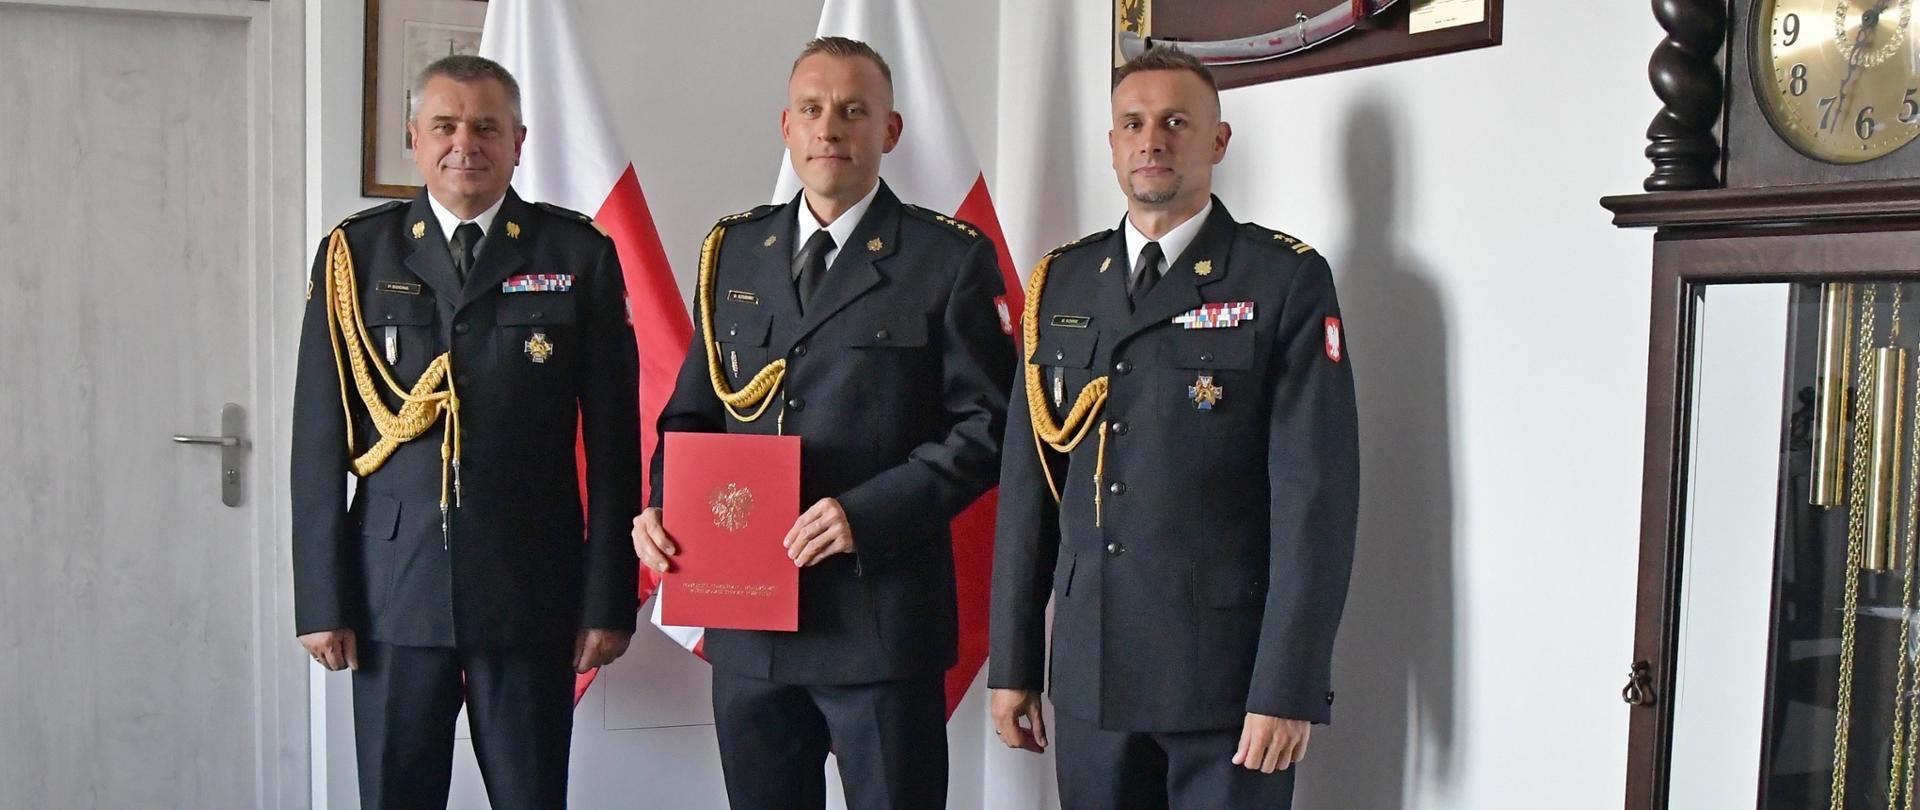 Trzech funkcjonariuszy Państwowej Straży Pożarnej stoi obok siebie strażak w środku trzyma czerwoną teczkę za nimi stoją dwie flagi Polski wisi obraz i szabla znajdują się drzwi oraz niedaleko ustawiony jest obraz.